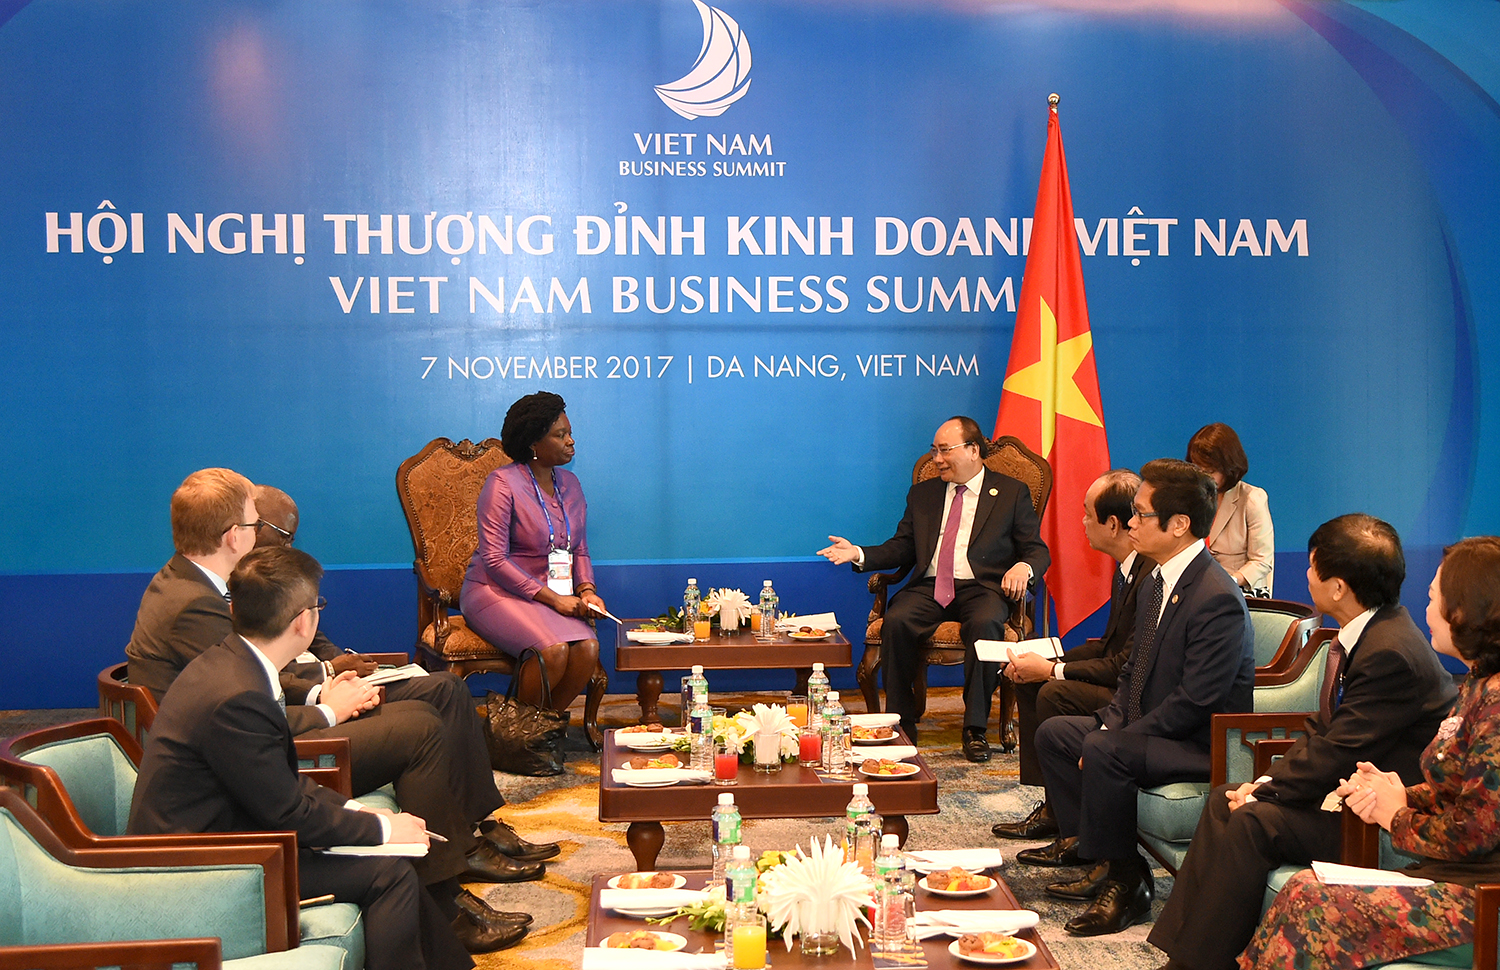 Thủ tướng: Vấn đề hợp tác PPP rất quan trọng với Việt Nam hiện nay